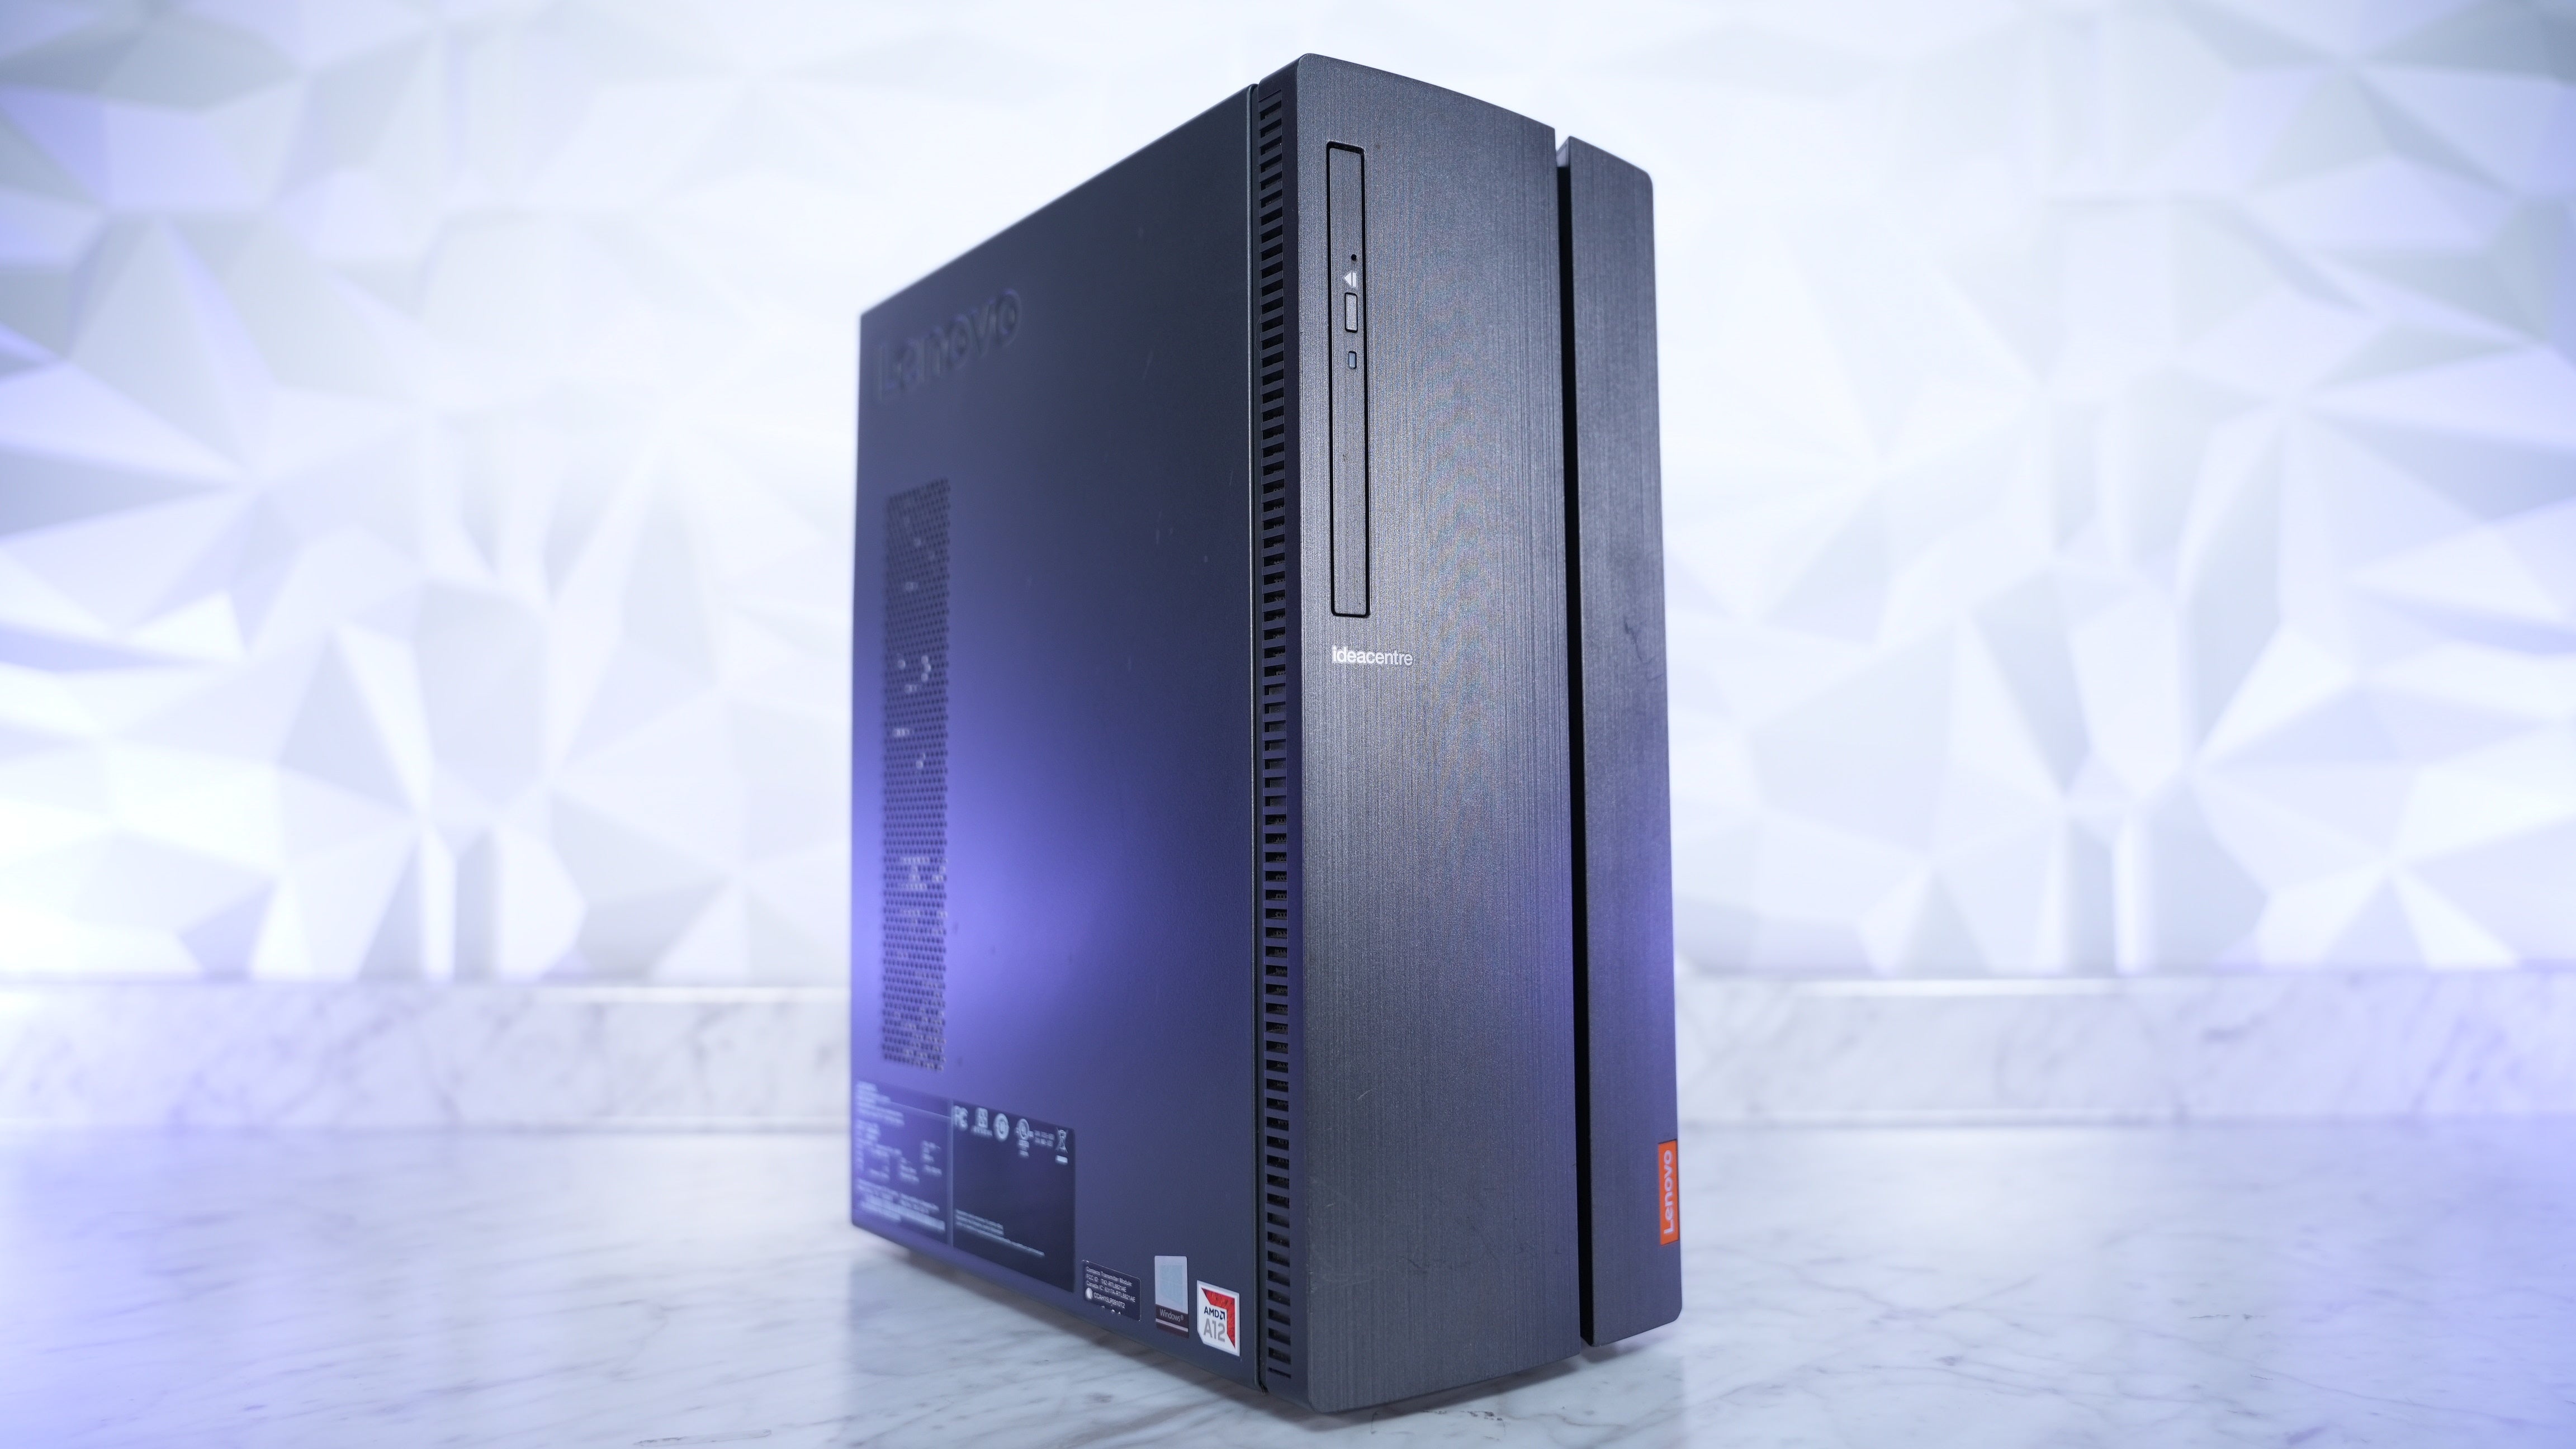 AMD A12-9800 + GTX 1050 Ti eSports Gaming PC (In Stock)